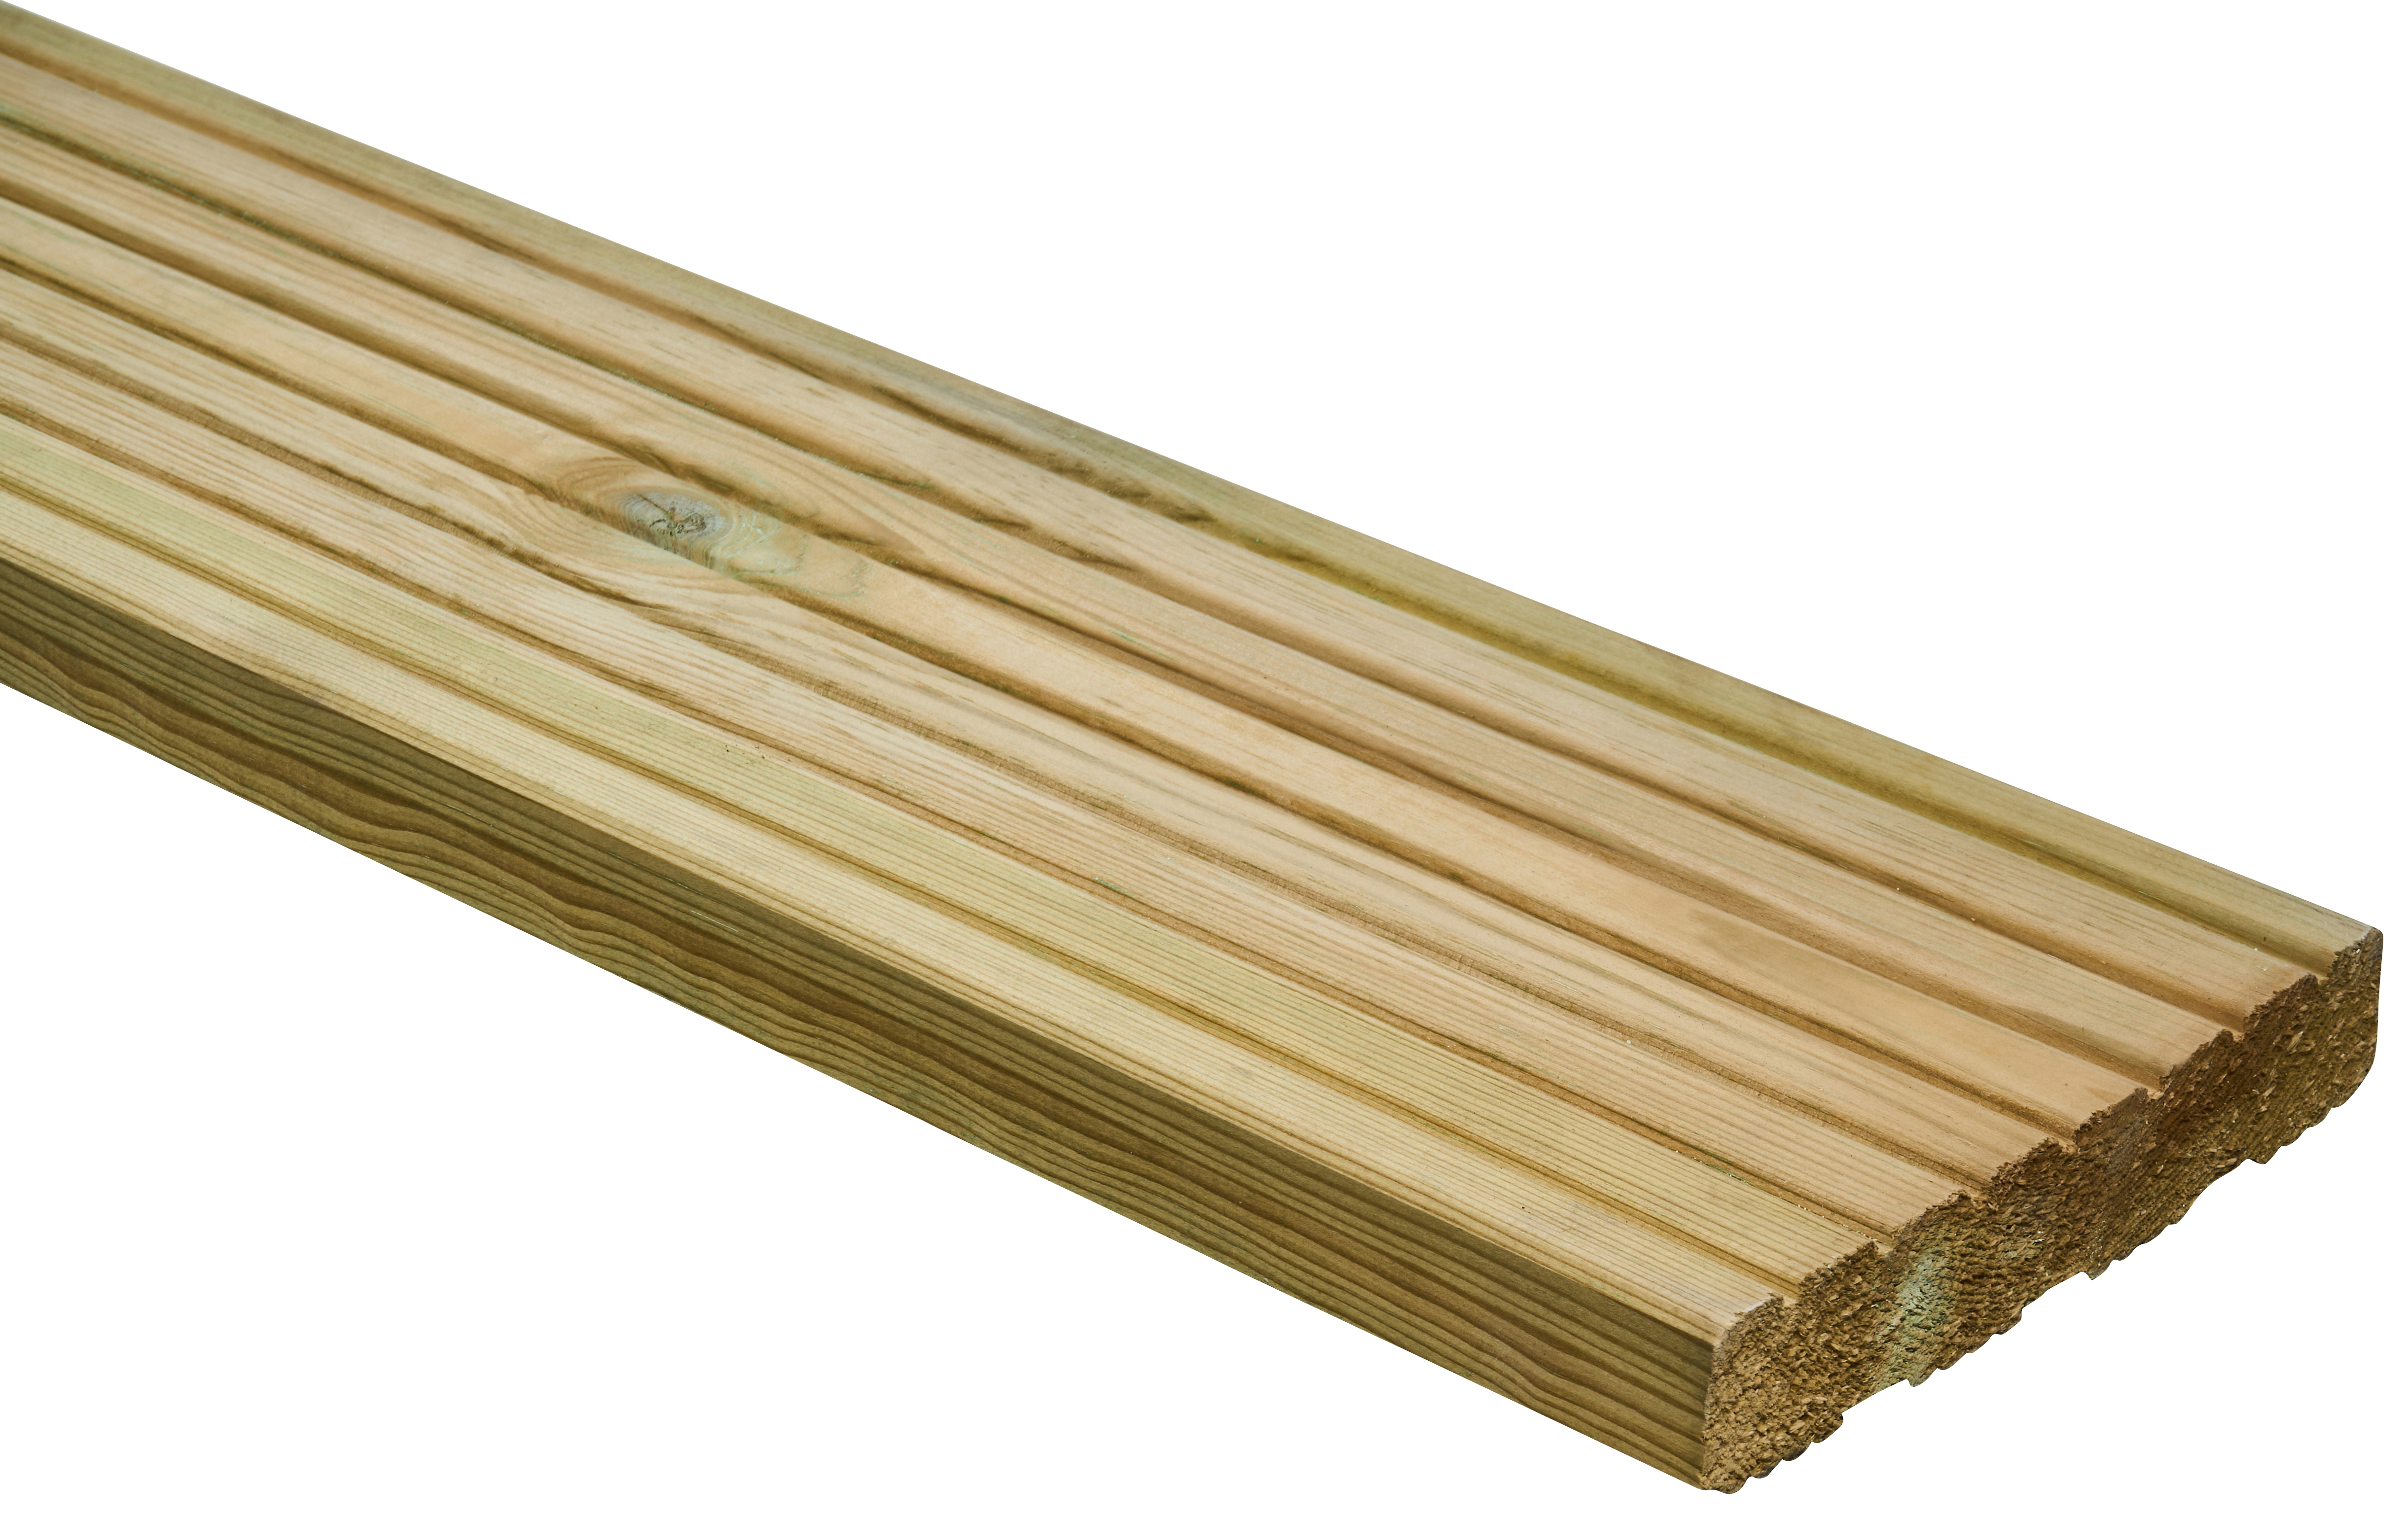 Wickes Pro Timber Deck Board - 27 x 144 x 2400mm